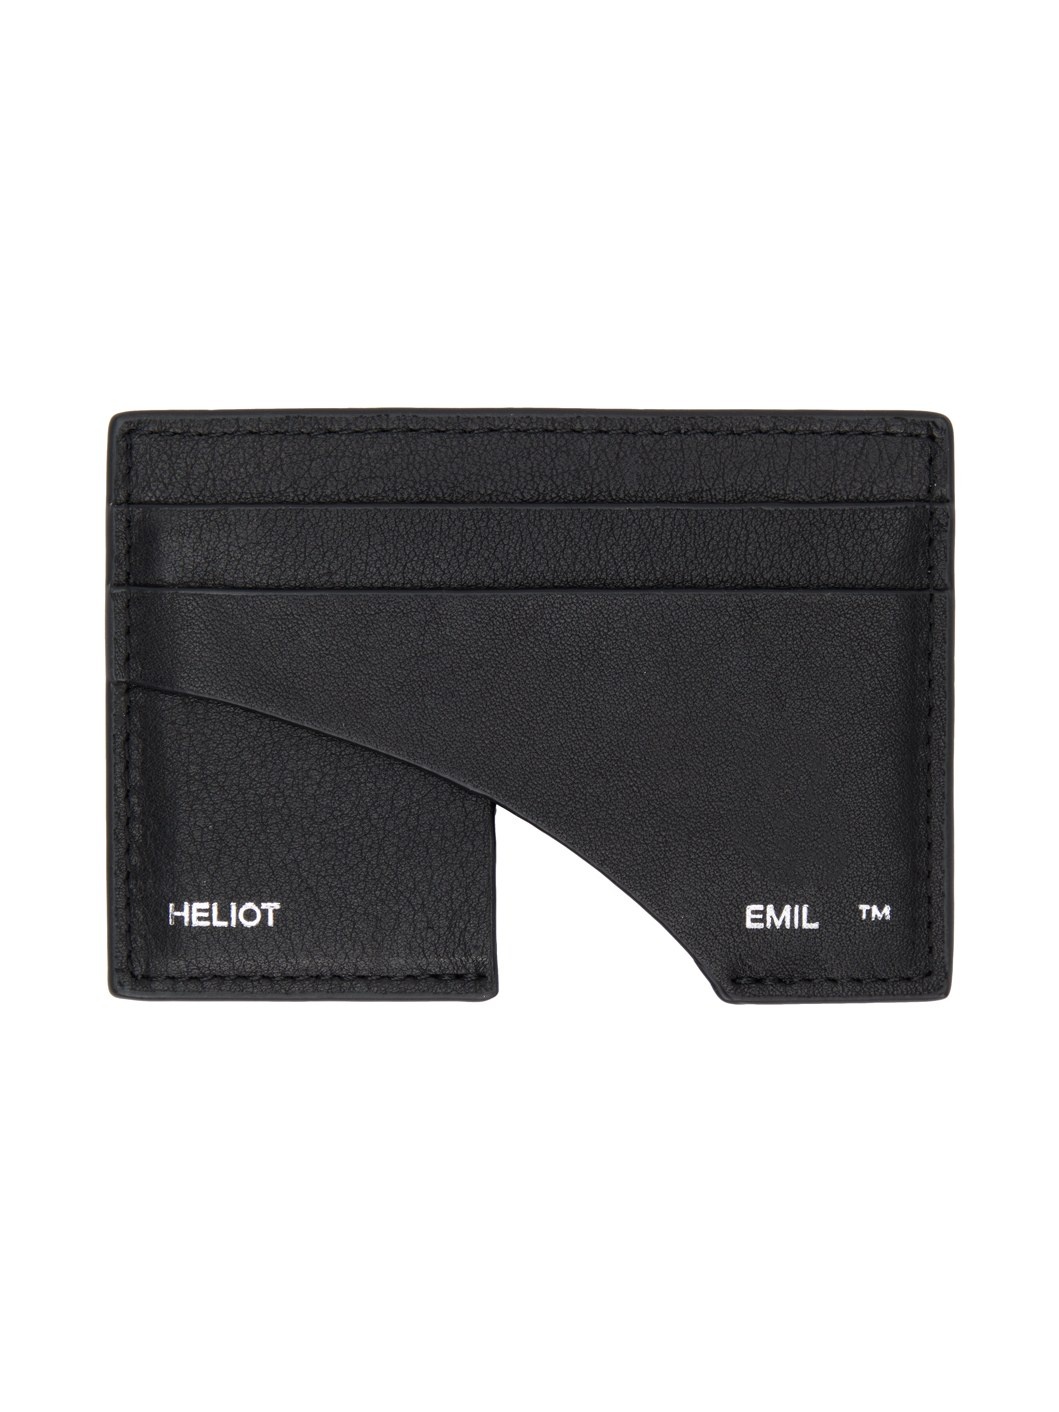 Black Leather Card Holder - 1